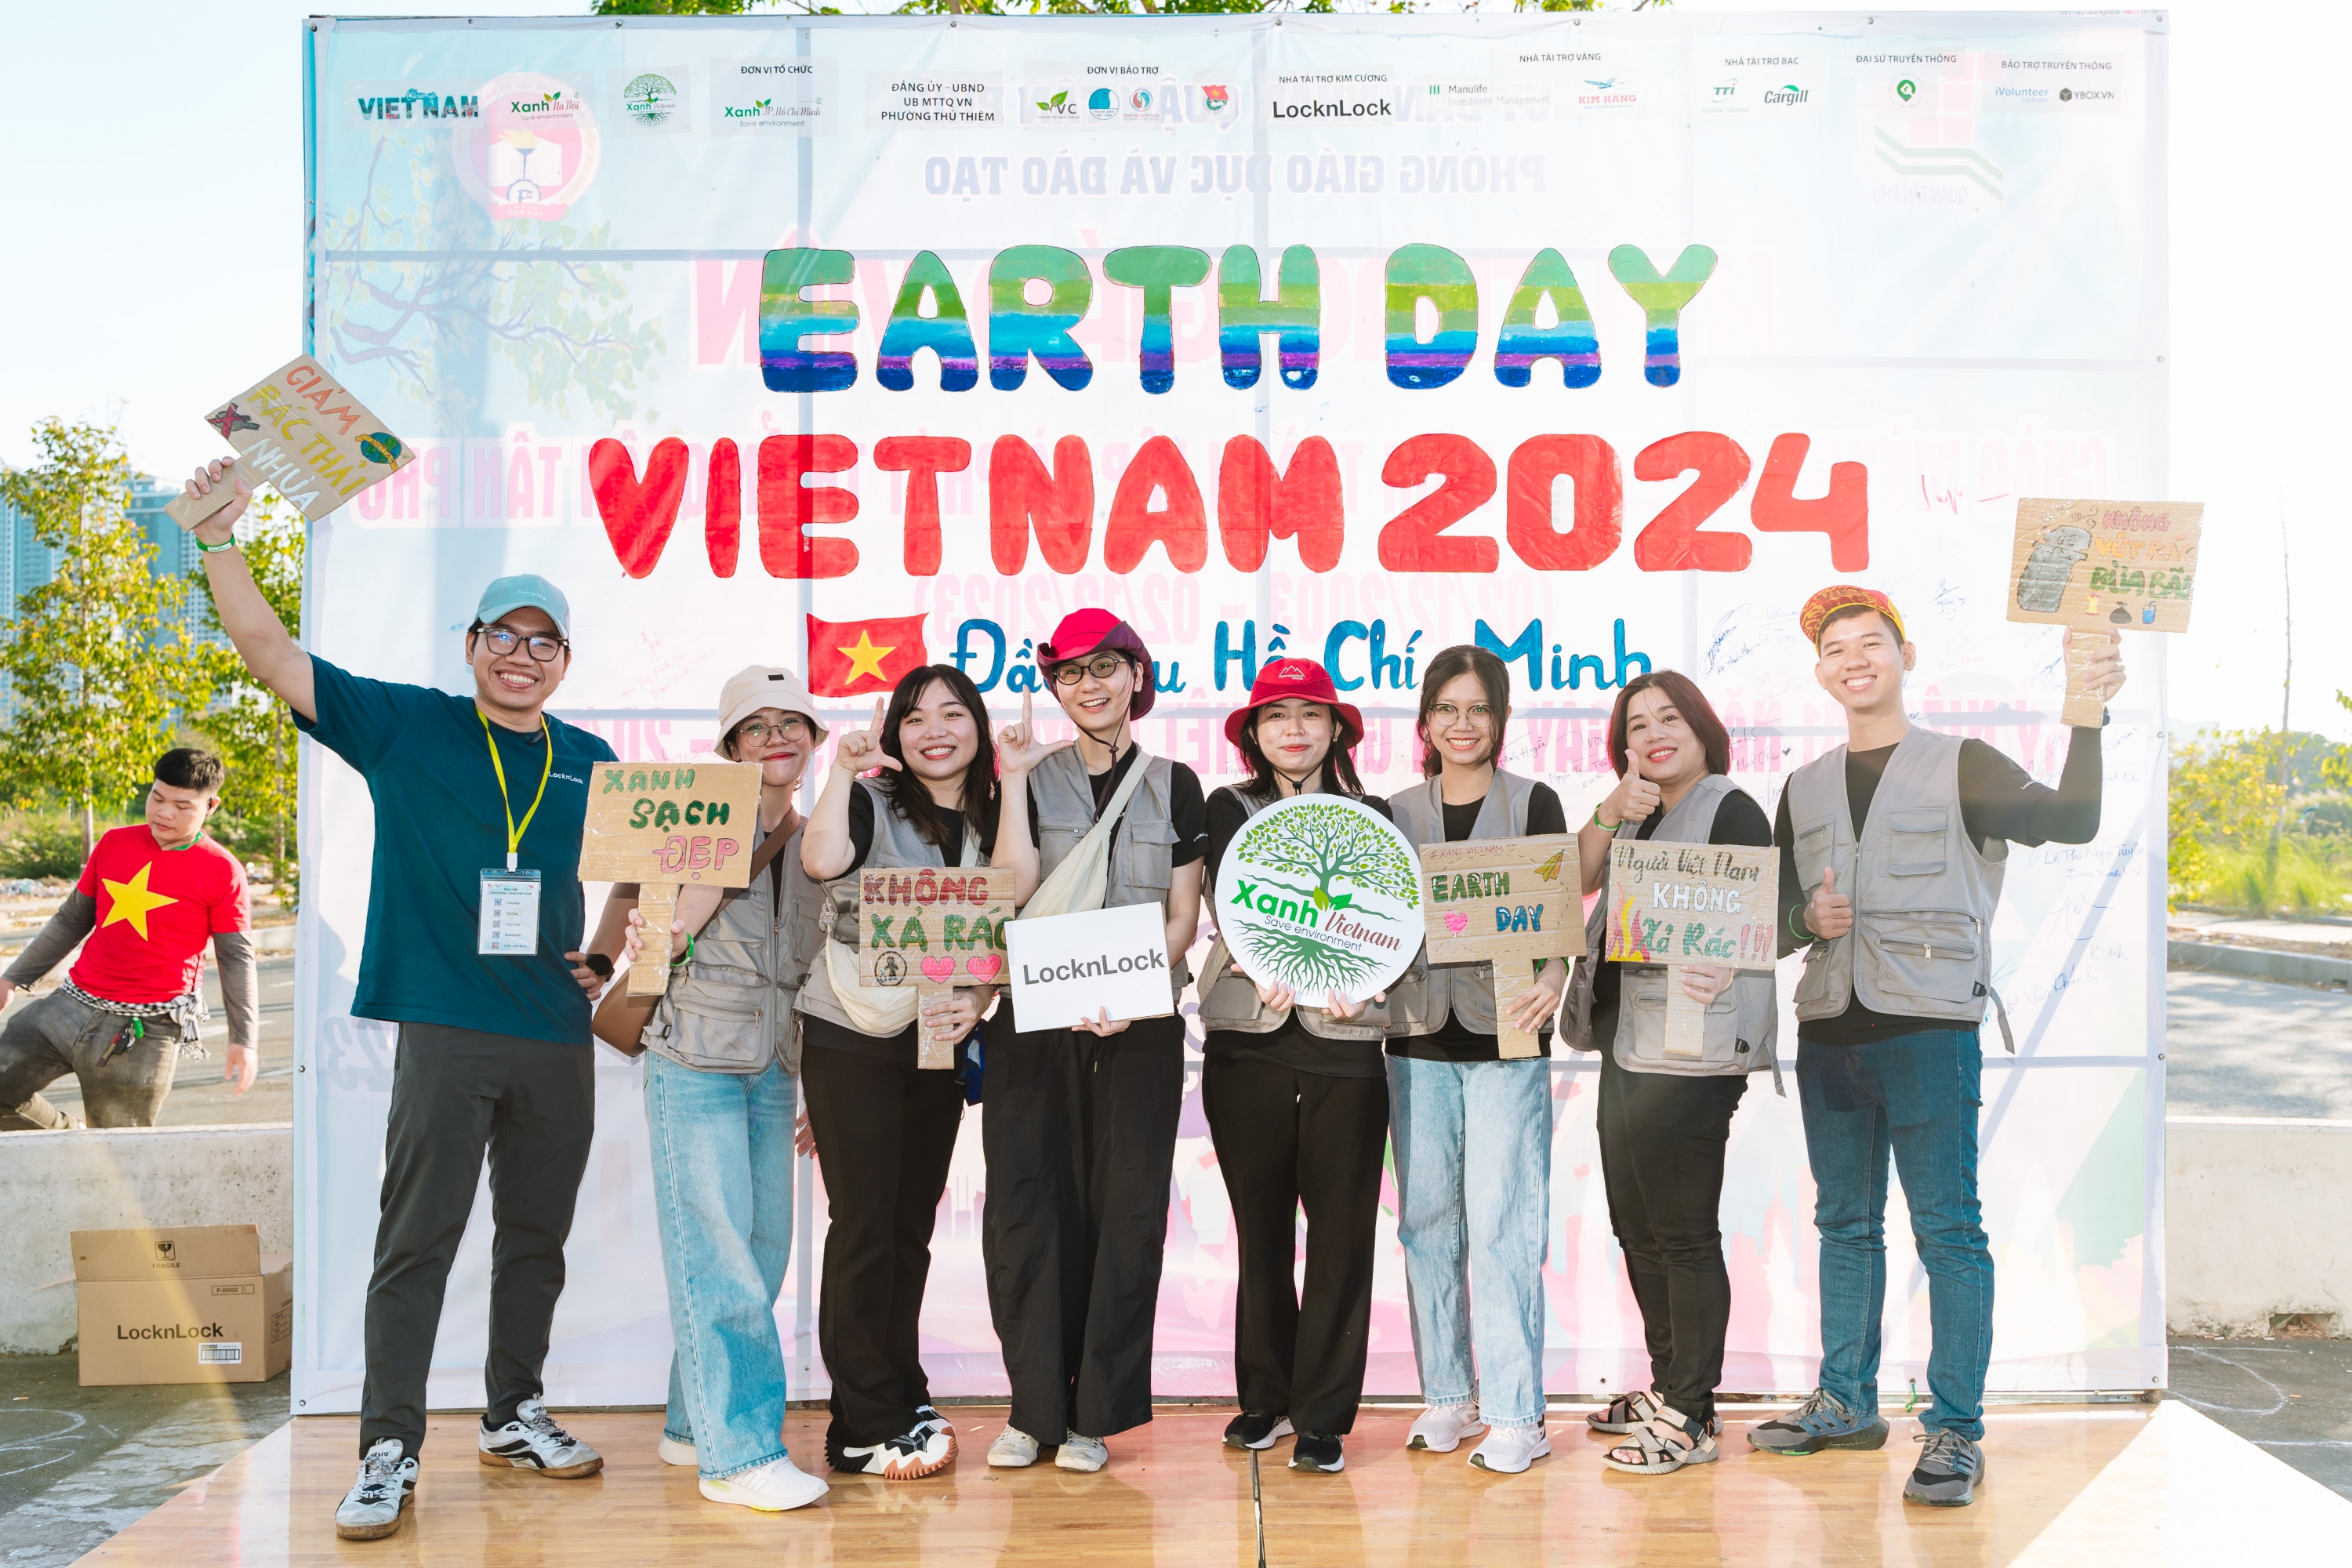 Locknlock đồng hành cùng chiến dịch “Earth day VietNam 2024”